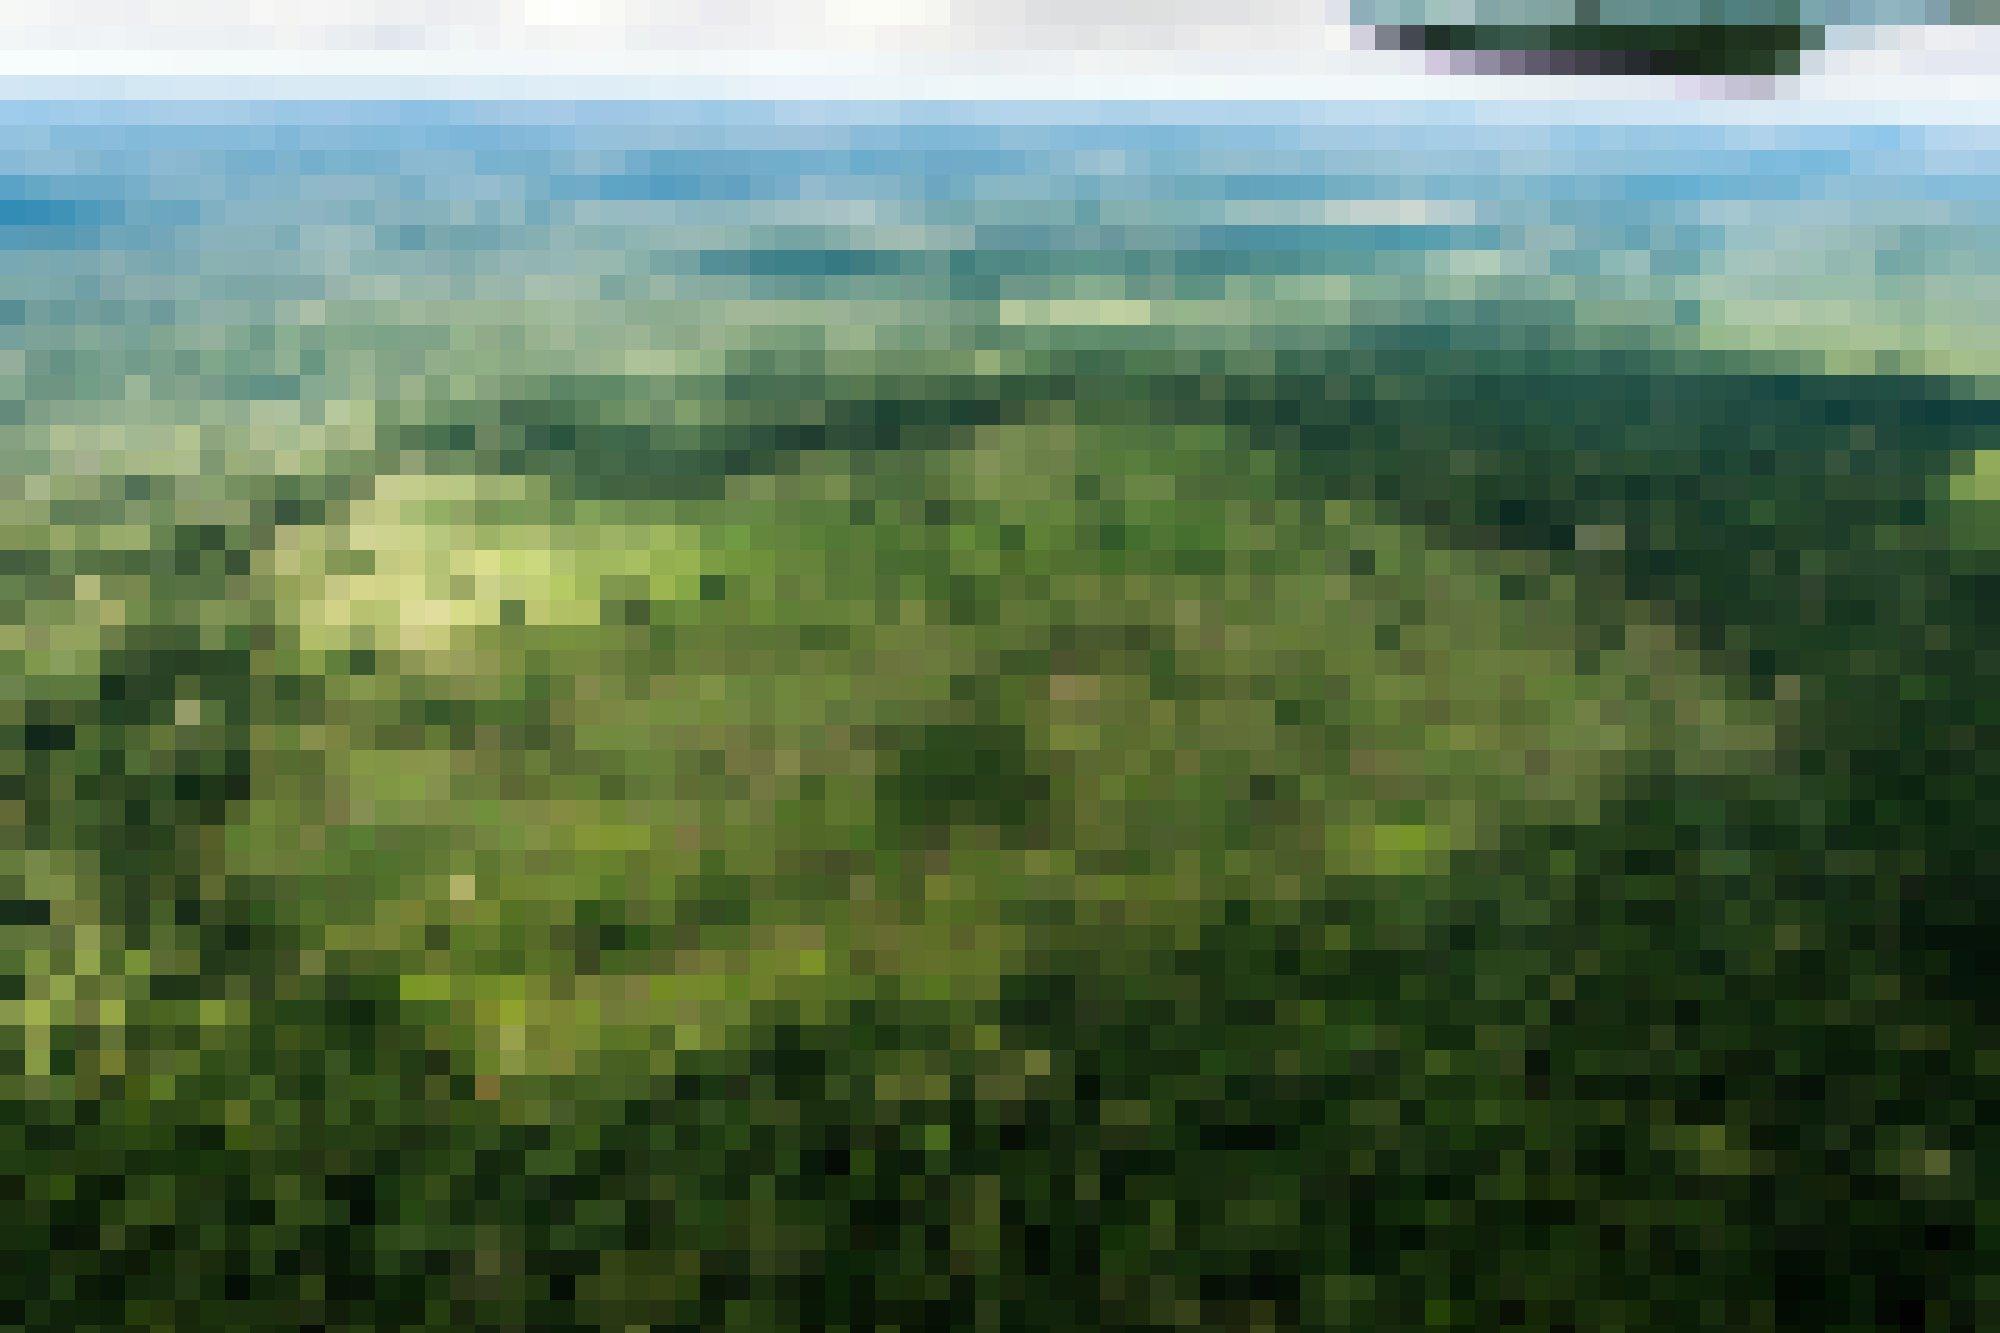 Aus der Perspektive des Überflugs sieht man zwei quadratische Blöcke, die aus dem Urwald gehauen wurden.